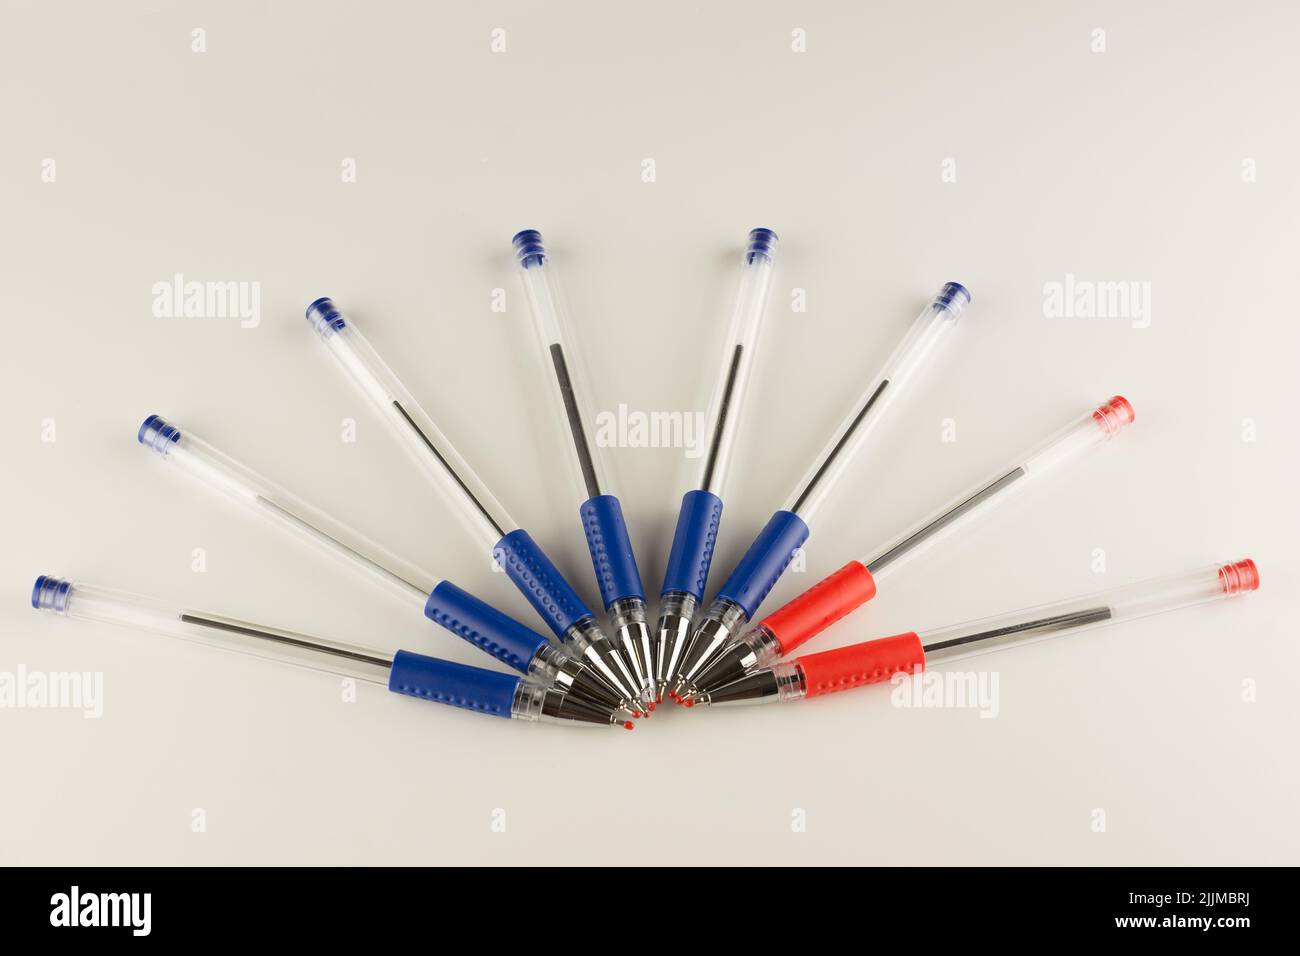 juego de bolígrafos azules alineados con un arco sobre un fondo blanco Foto de stock